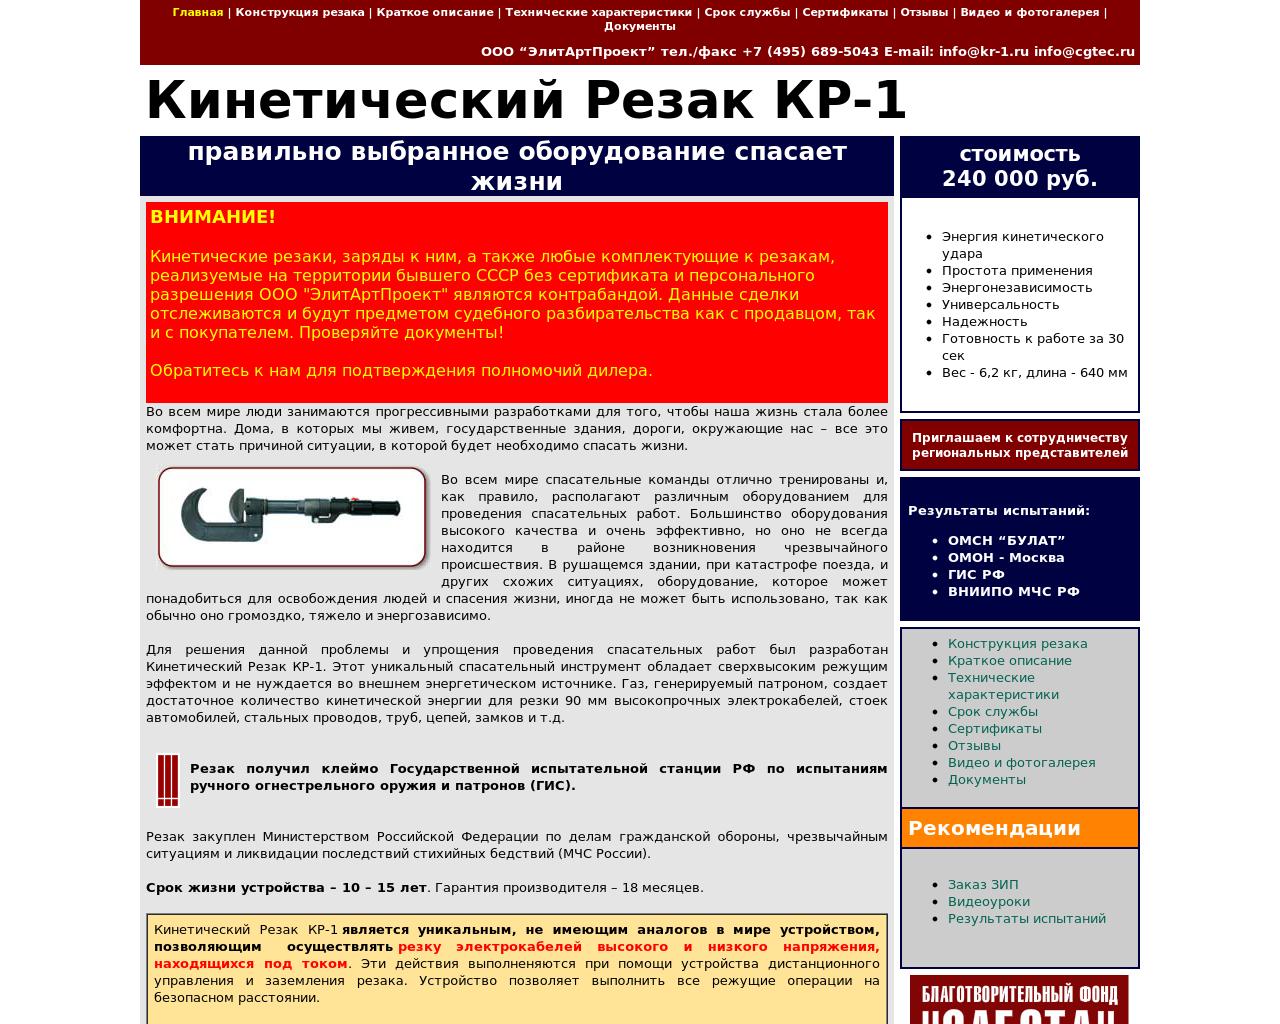 Изображение сайта kr-1.ru в разрешении 1280x1024